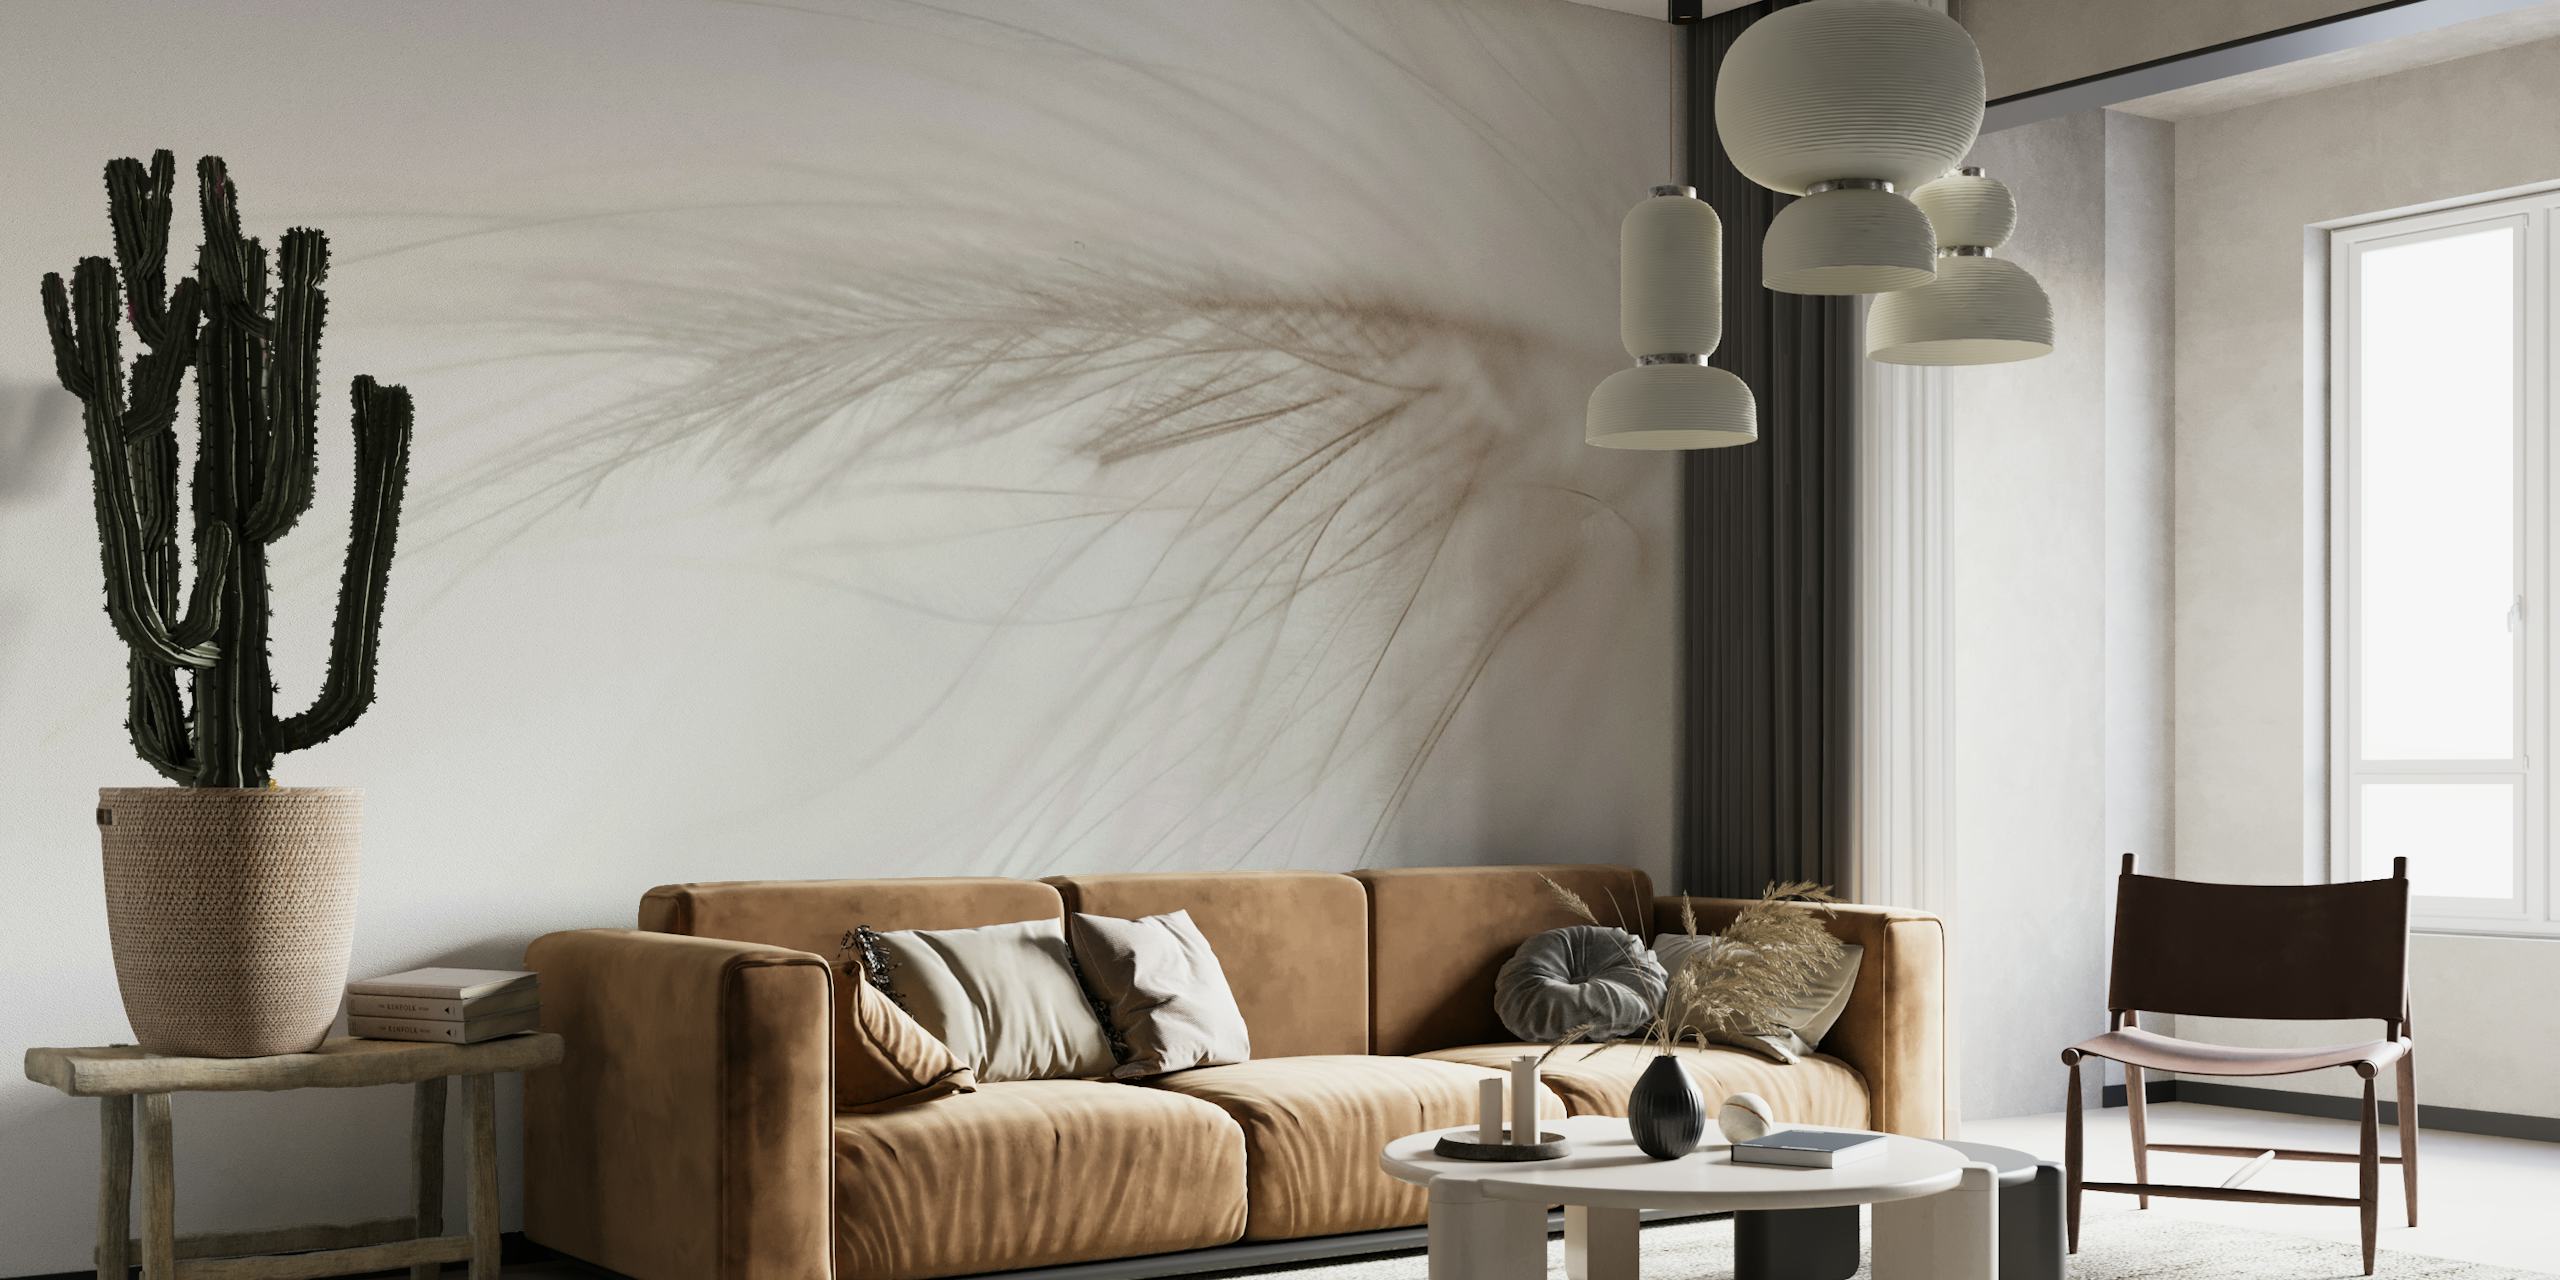 Fotomural de primer plano de plumas blancas para una decoración interior tranquila